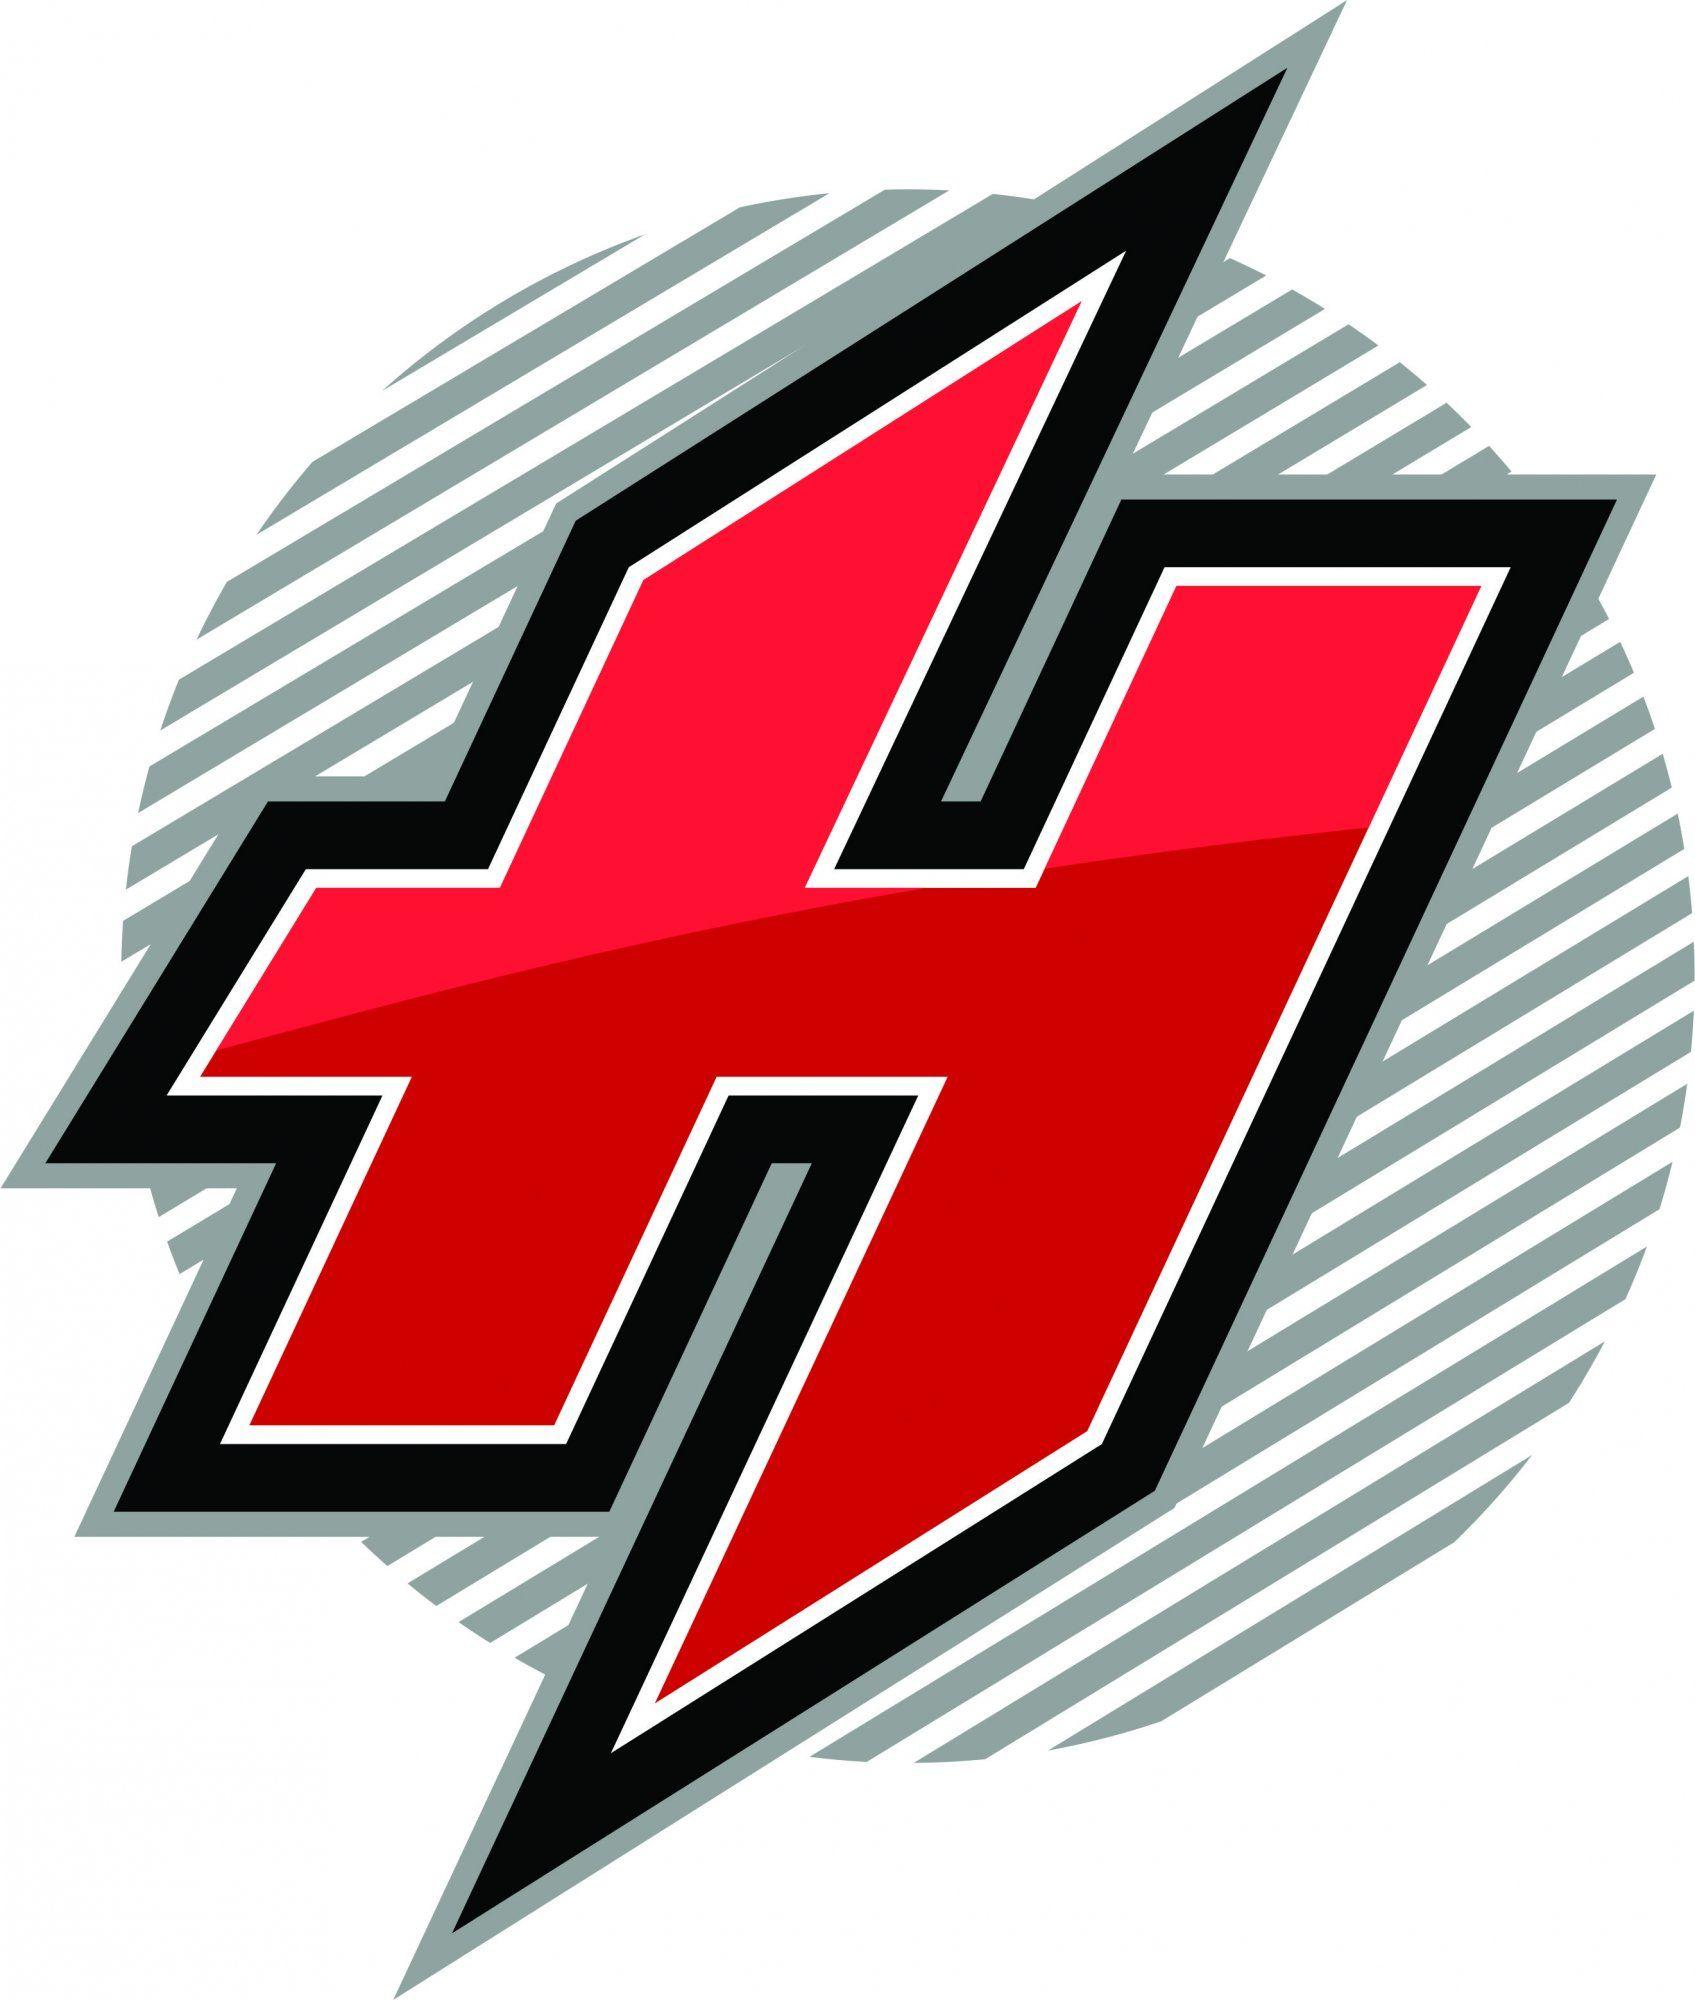 Red H Logo - h logo 05. hiketech. Logos, H logos, Vector free